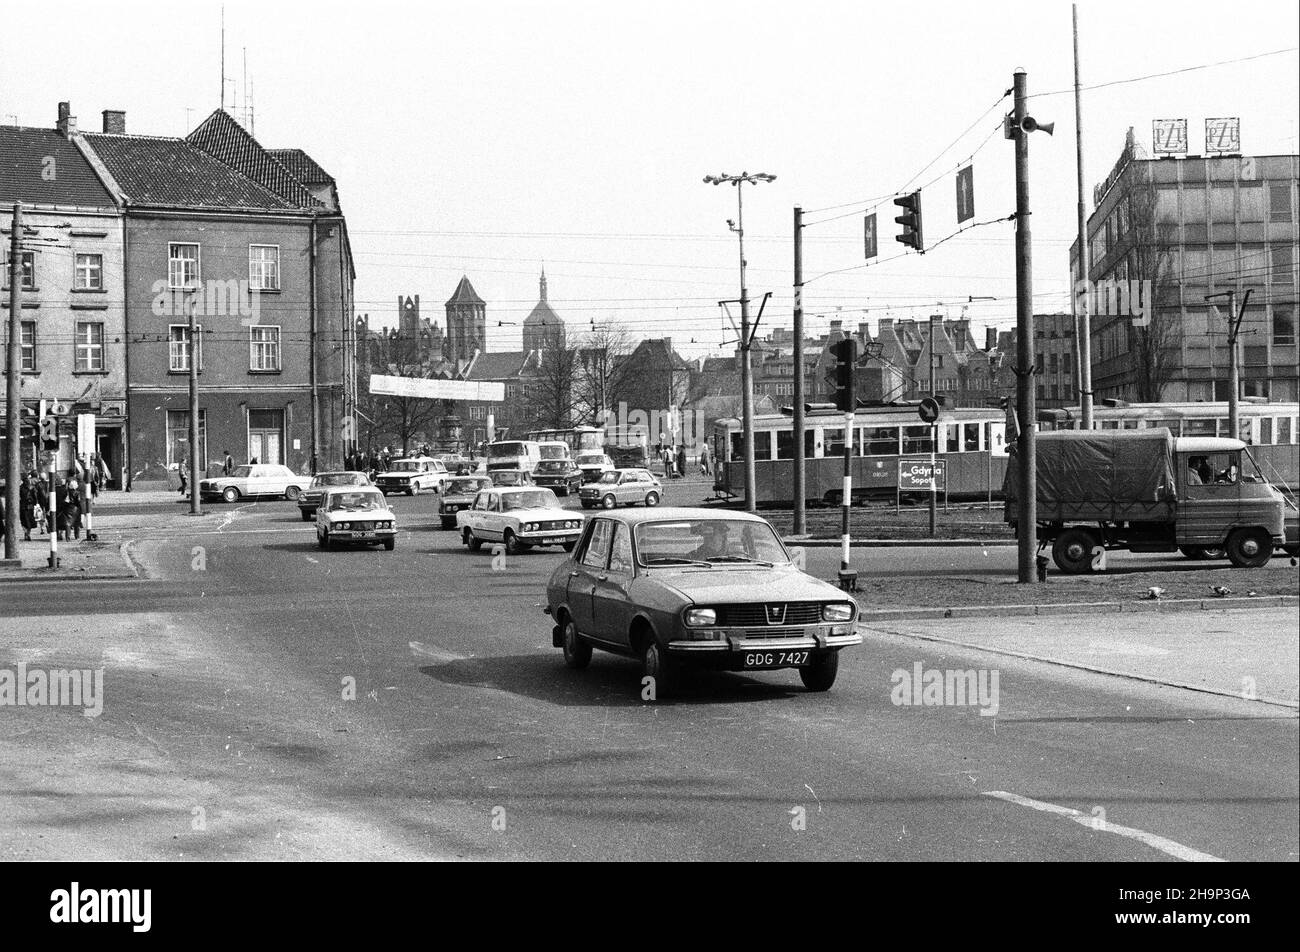 Gdañsk, 1981-04-02. Ruch uliczny w mieœcie. jb  PAP/CAF/Stefan Kraszewski      Gdansk, April 2, 1981. City traffic.  jb  PAP/CAF/Stefan Kraszewski Stock Photo